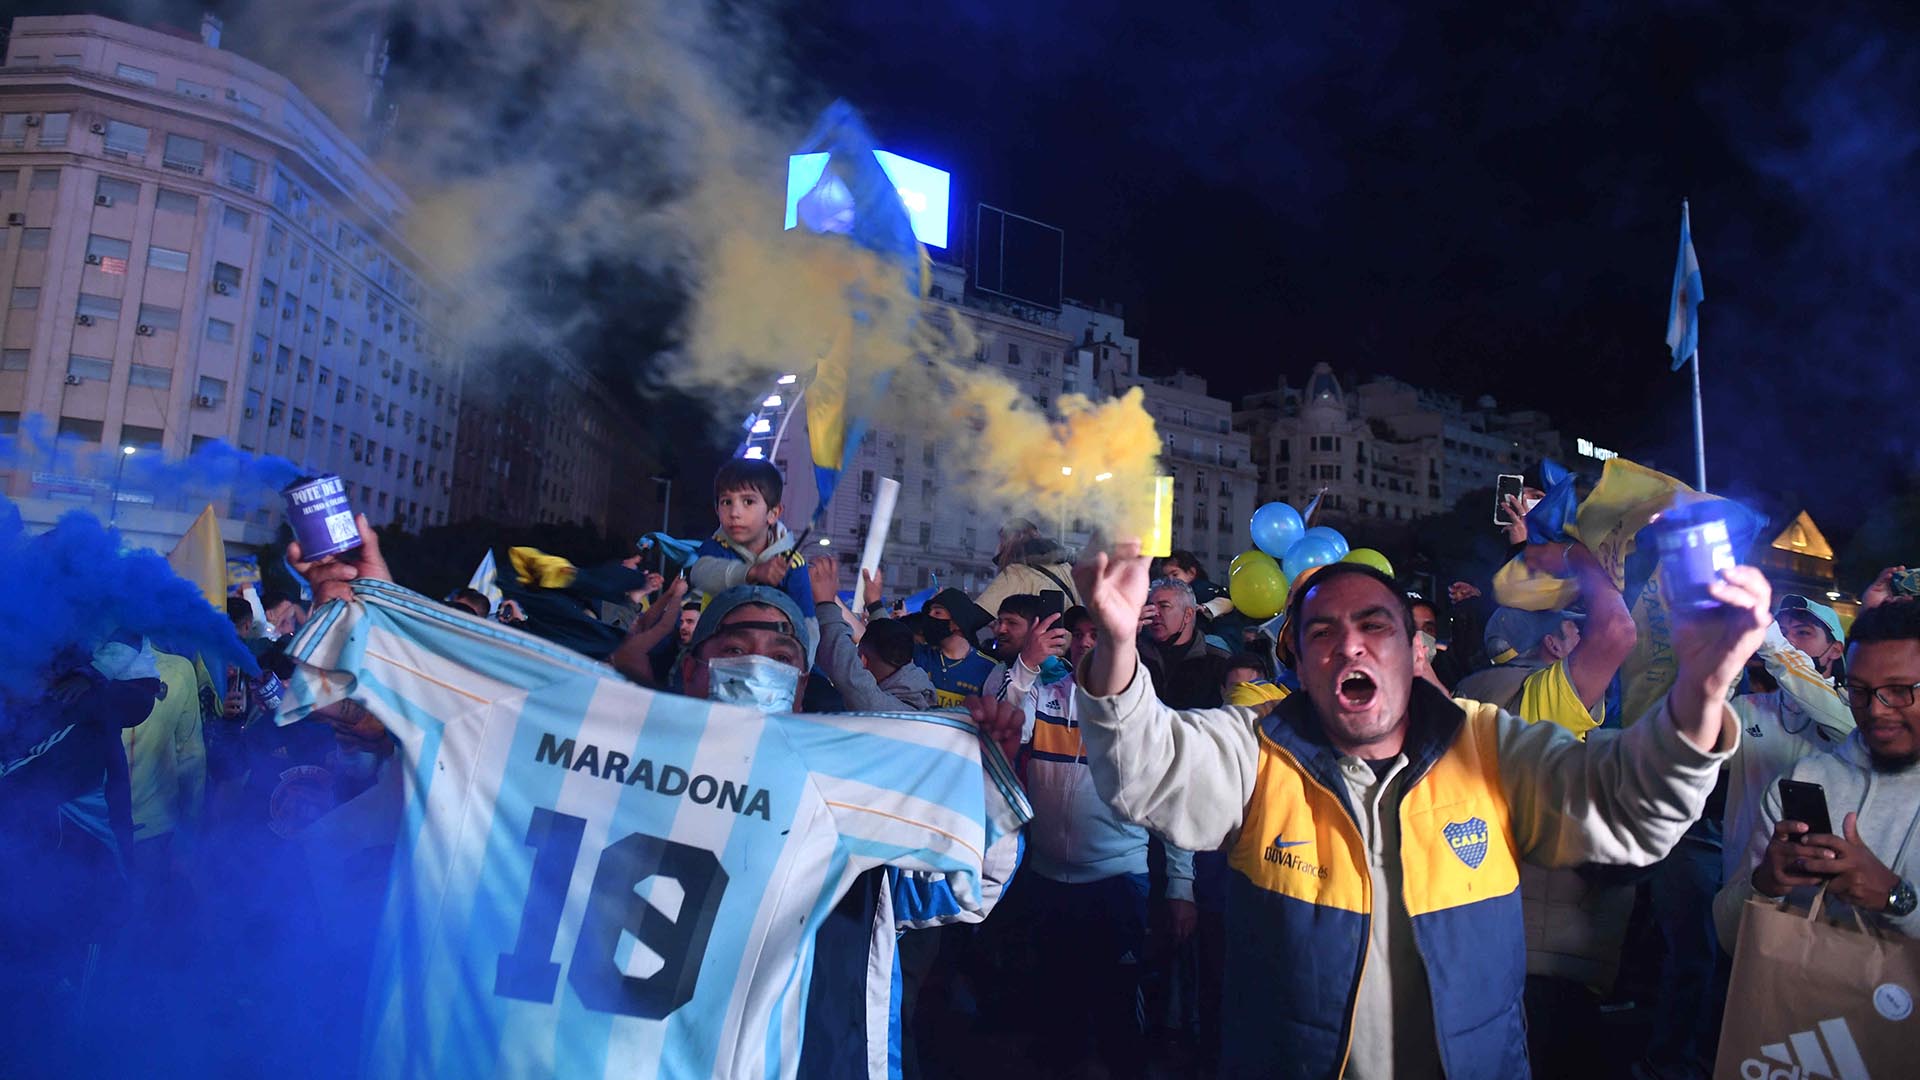 Una camiseta de Maradona apareció entre los festejos de los hinchas del Xeneize (Foto: Telam)